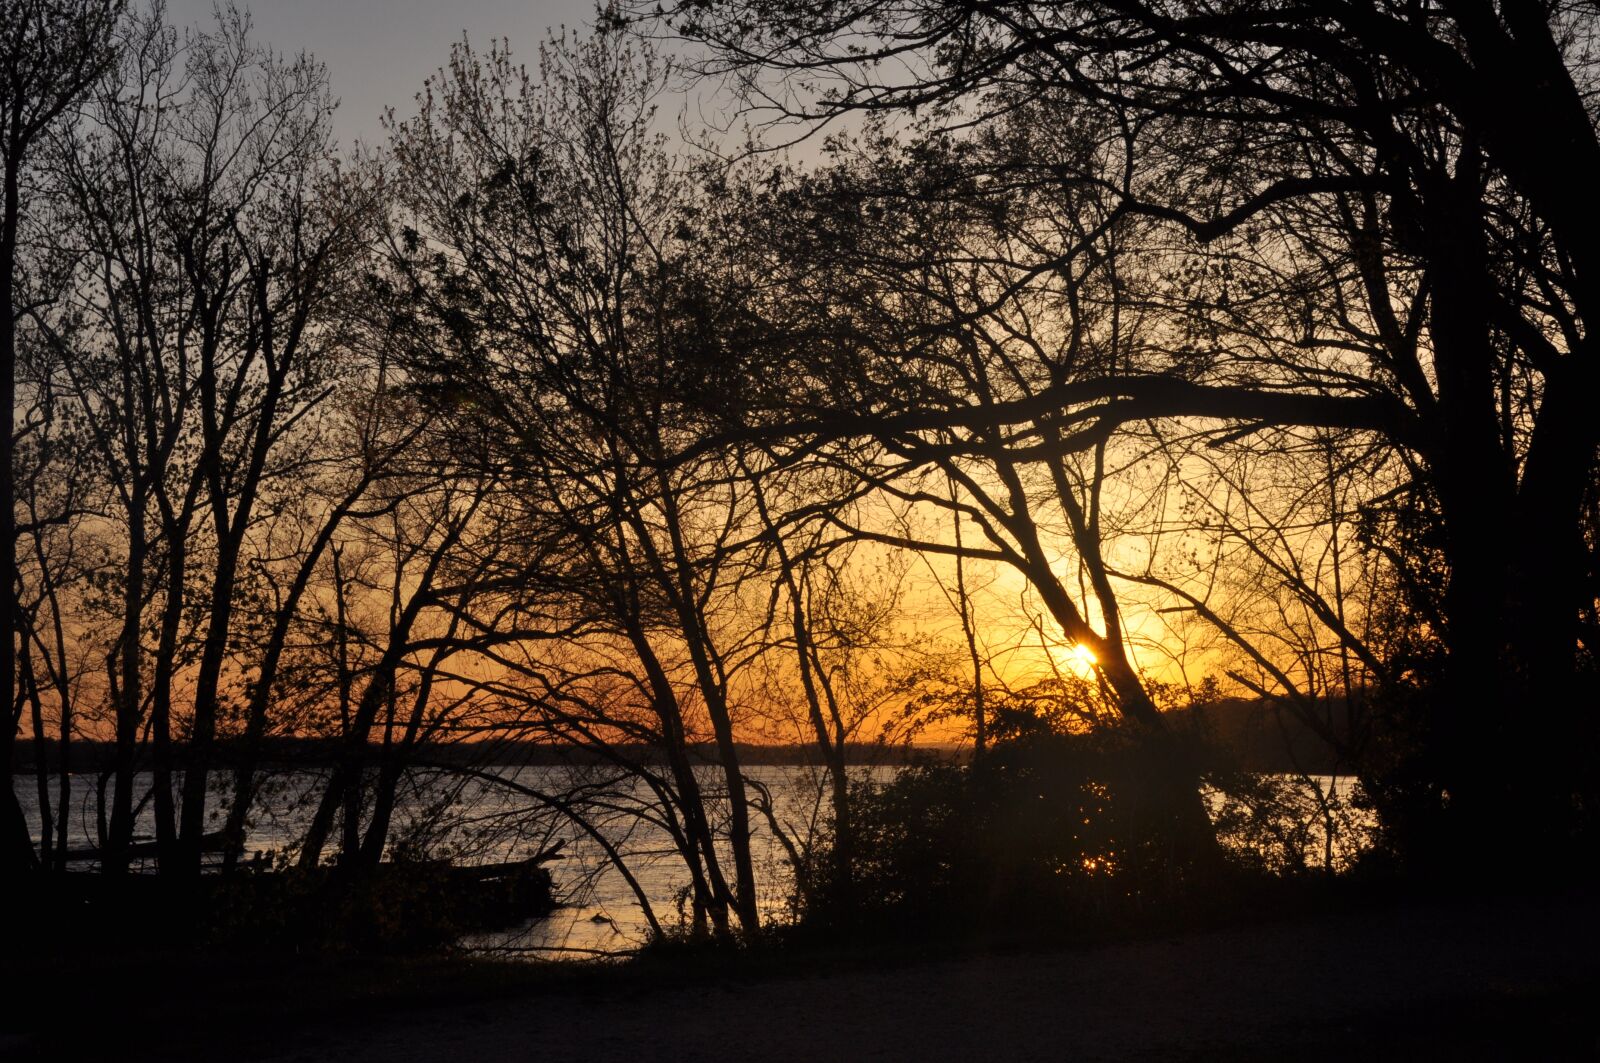 Nikon D90 sample photo. Potomac river, sunset, evening photography